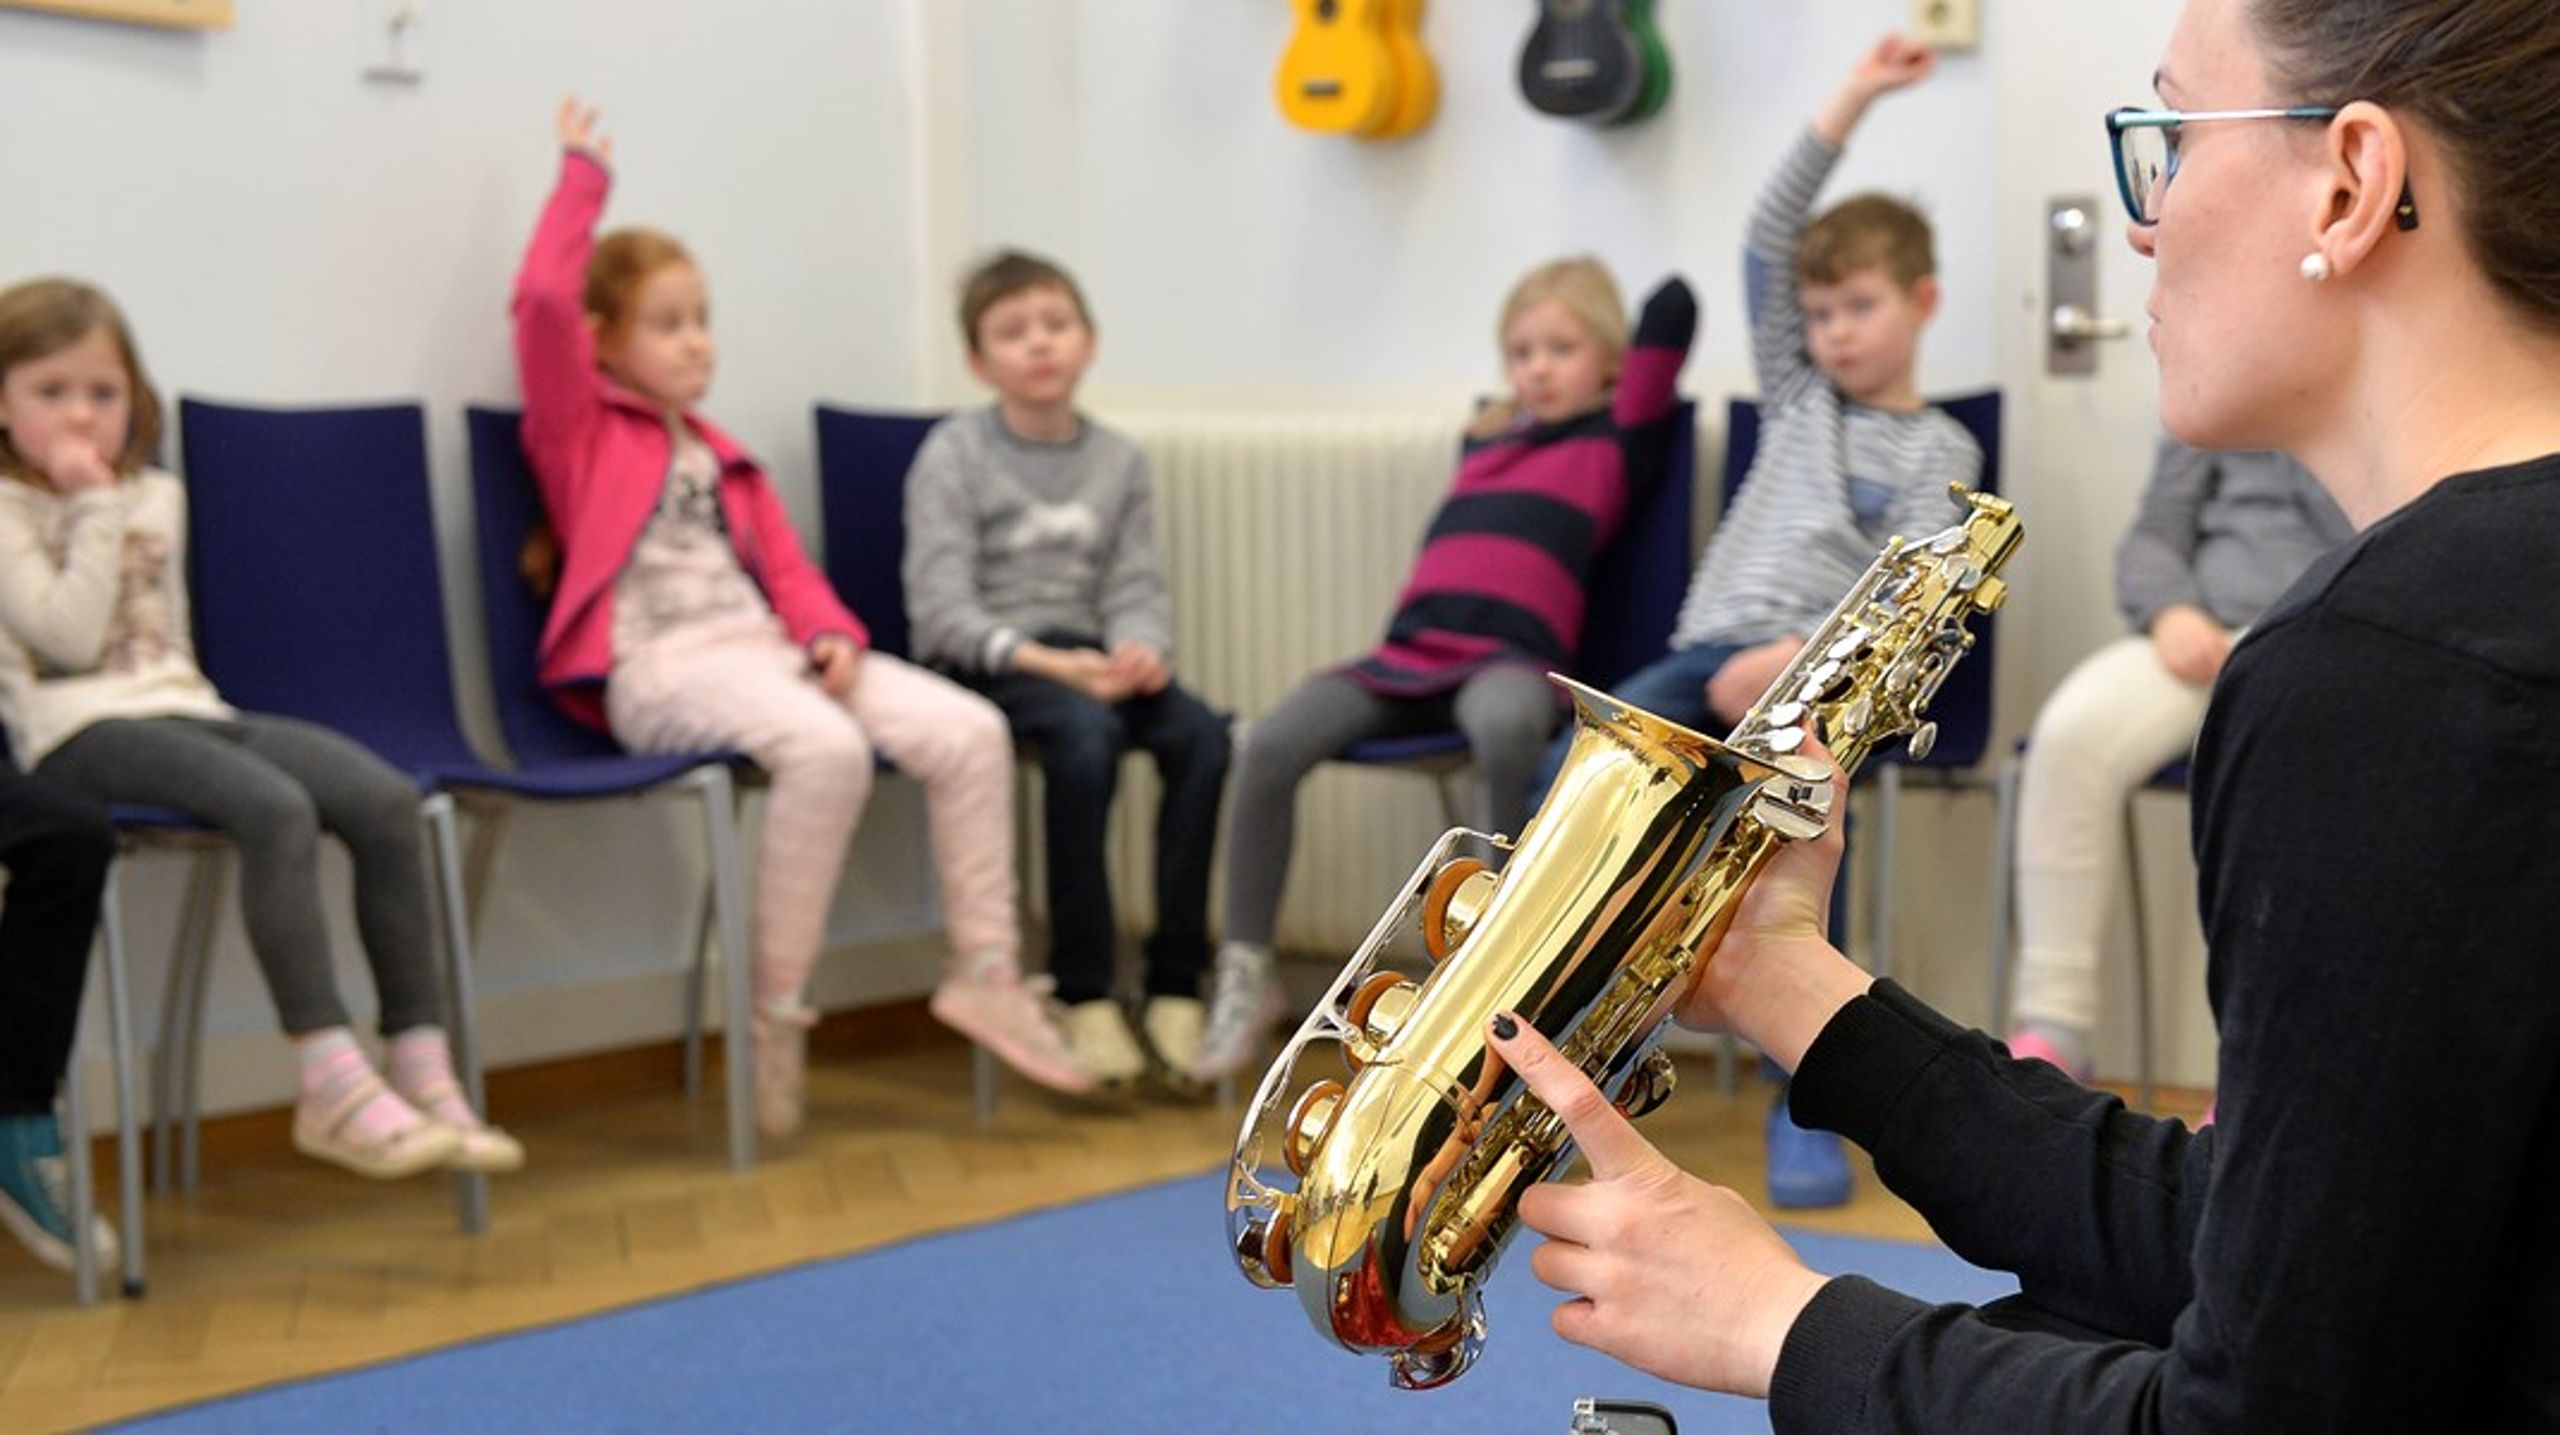 Alla lärarutbildningar med inriktning mot förskola och grundskola borde innehålla musikämnet i betydligt större omfattning än i dag, skriver debattörerna.